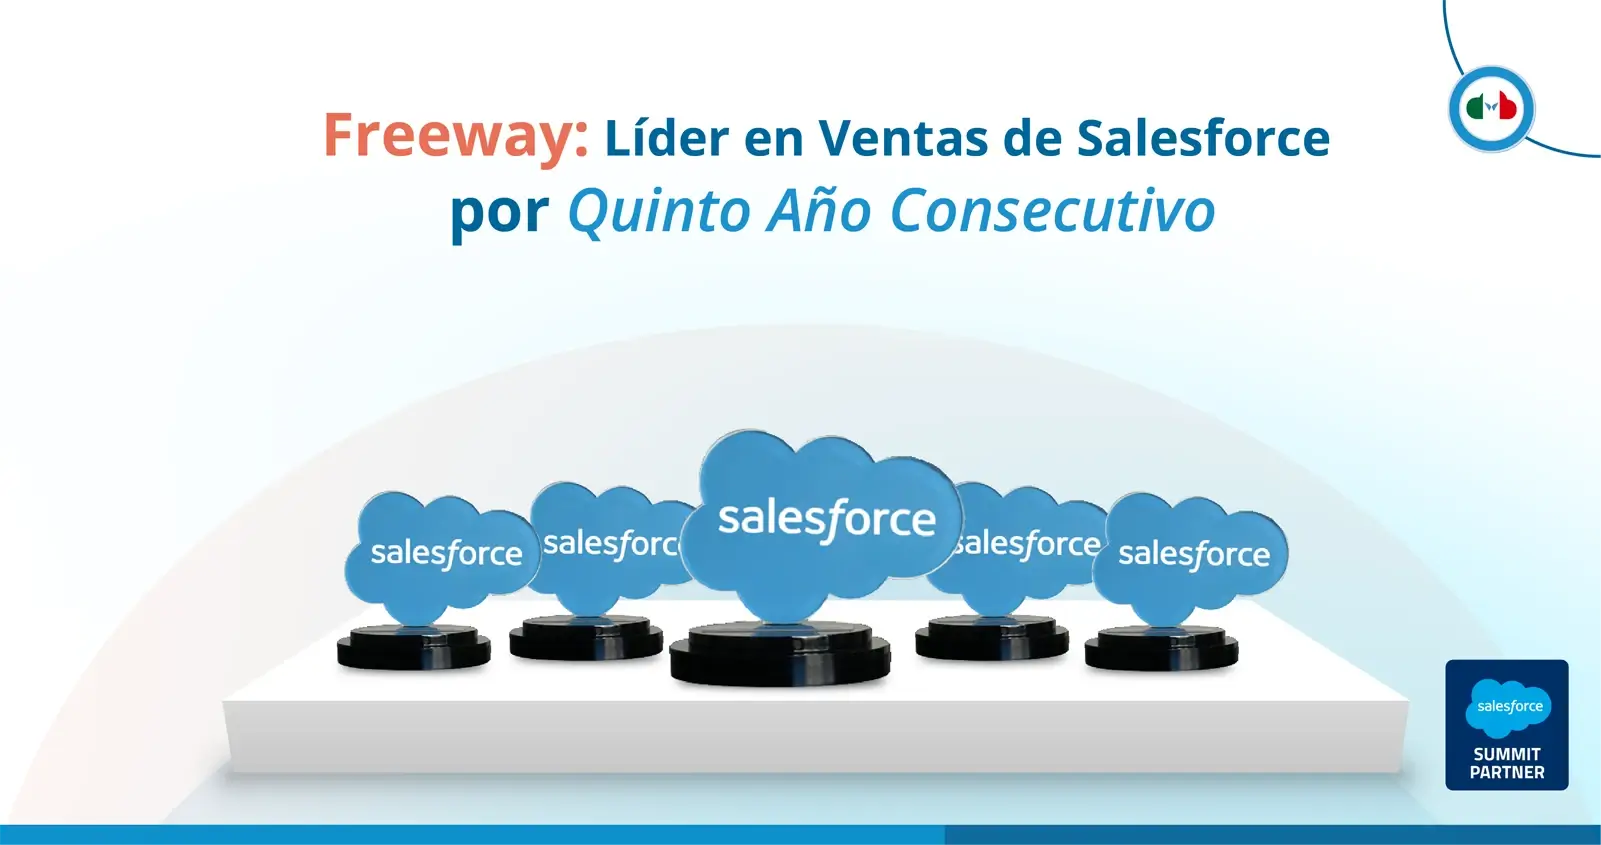 Salesforce México: Freeway Líder en Ventas por 5 Años consecutivos